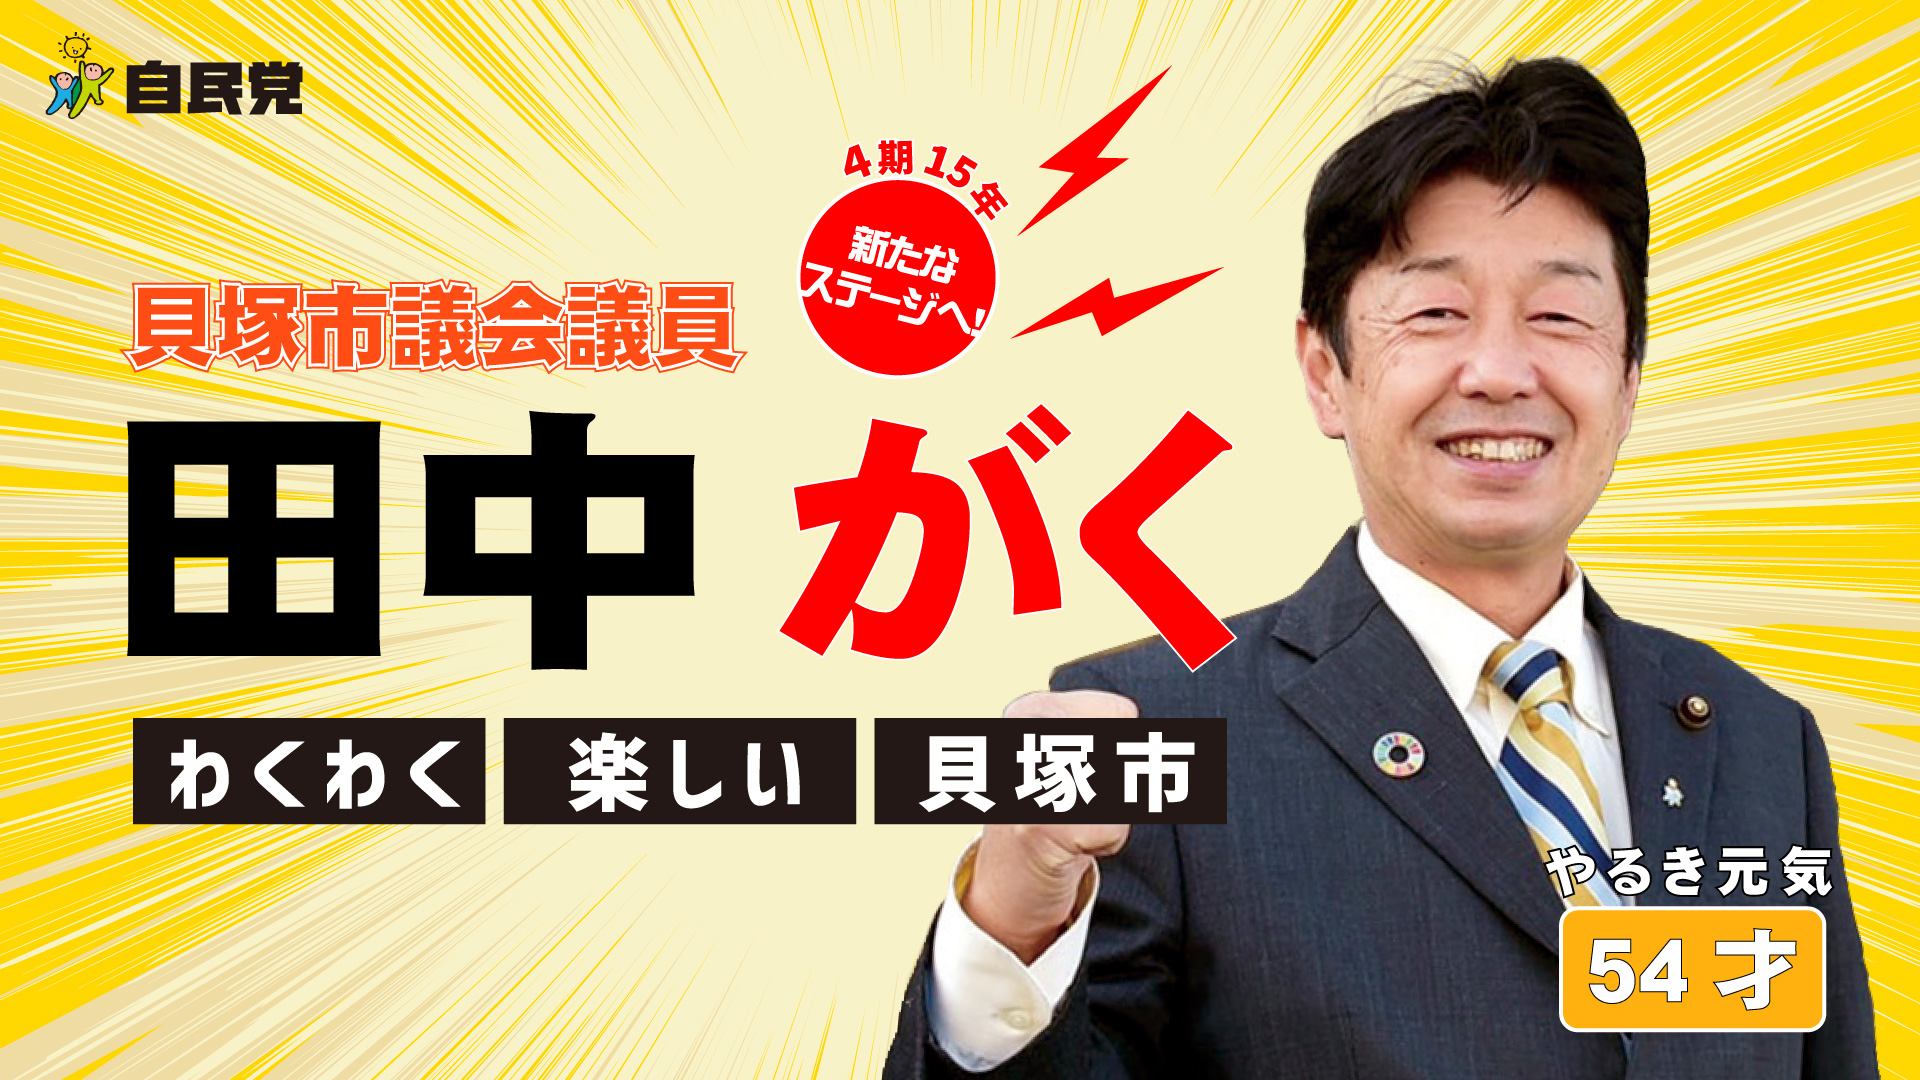 貝塚市長候補 田中がく 公式サイト